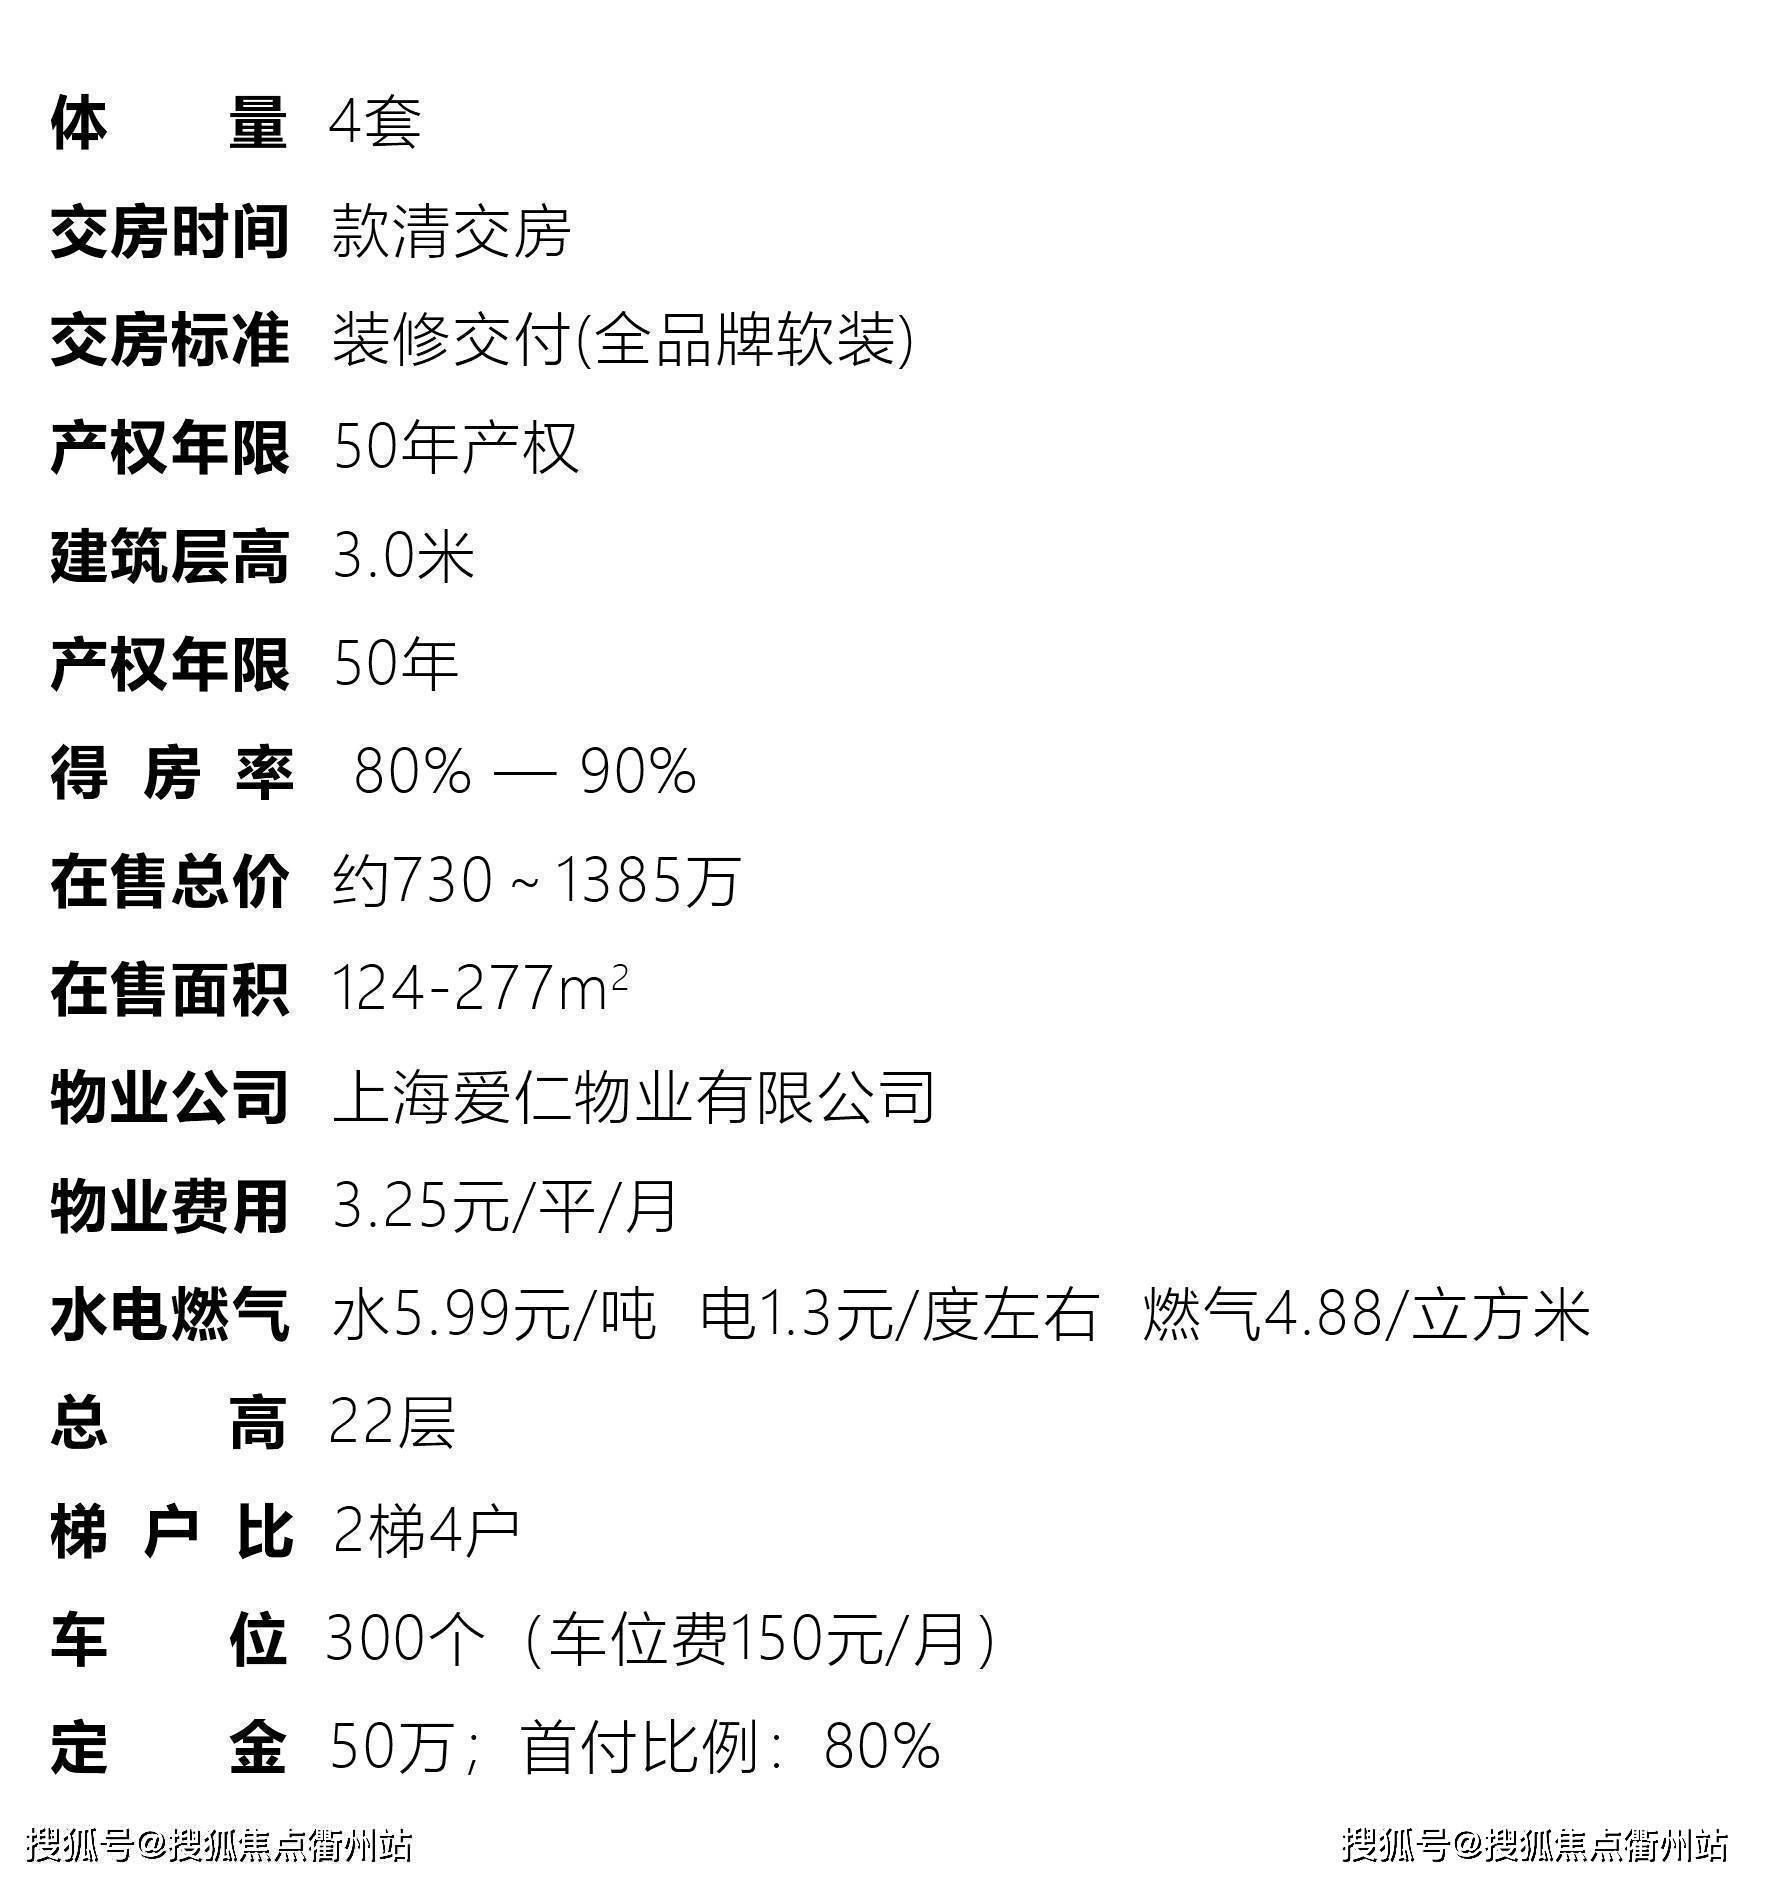 协诚988售楼处电话丨上海静安区~协诚988公寓(房价 户型图)